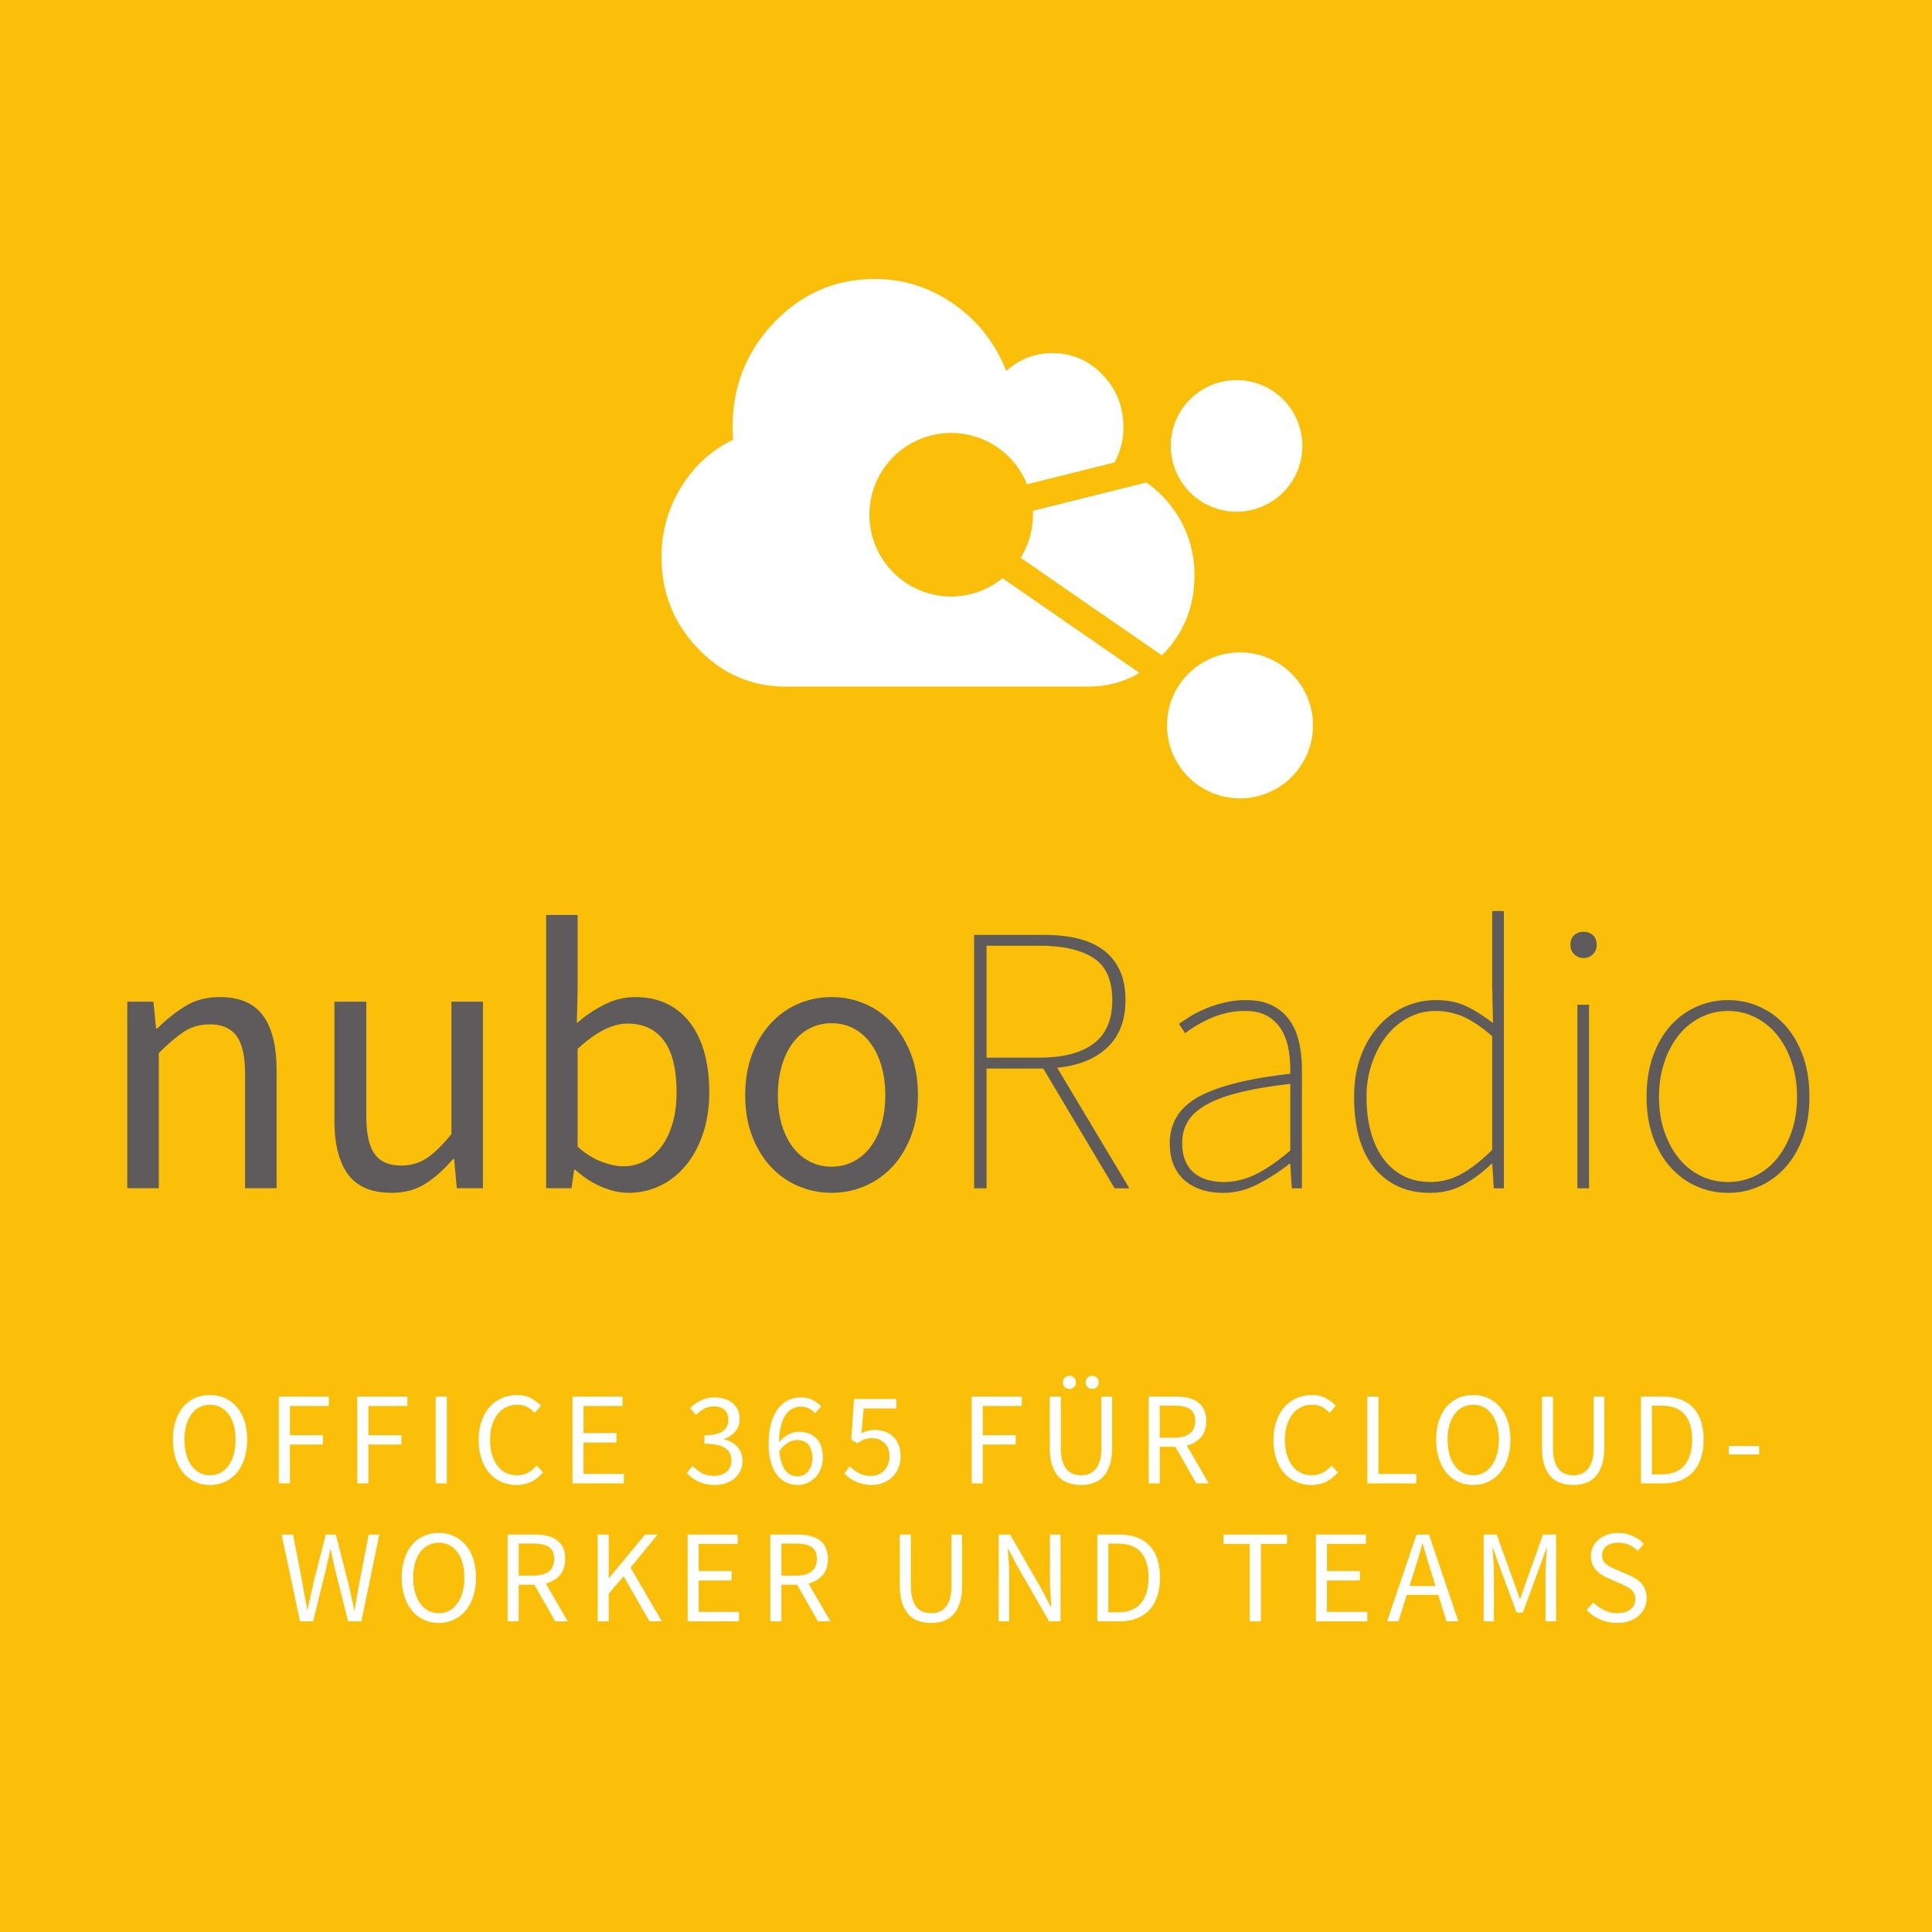 NuboRadio2019 2 - nuboRadio